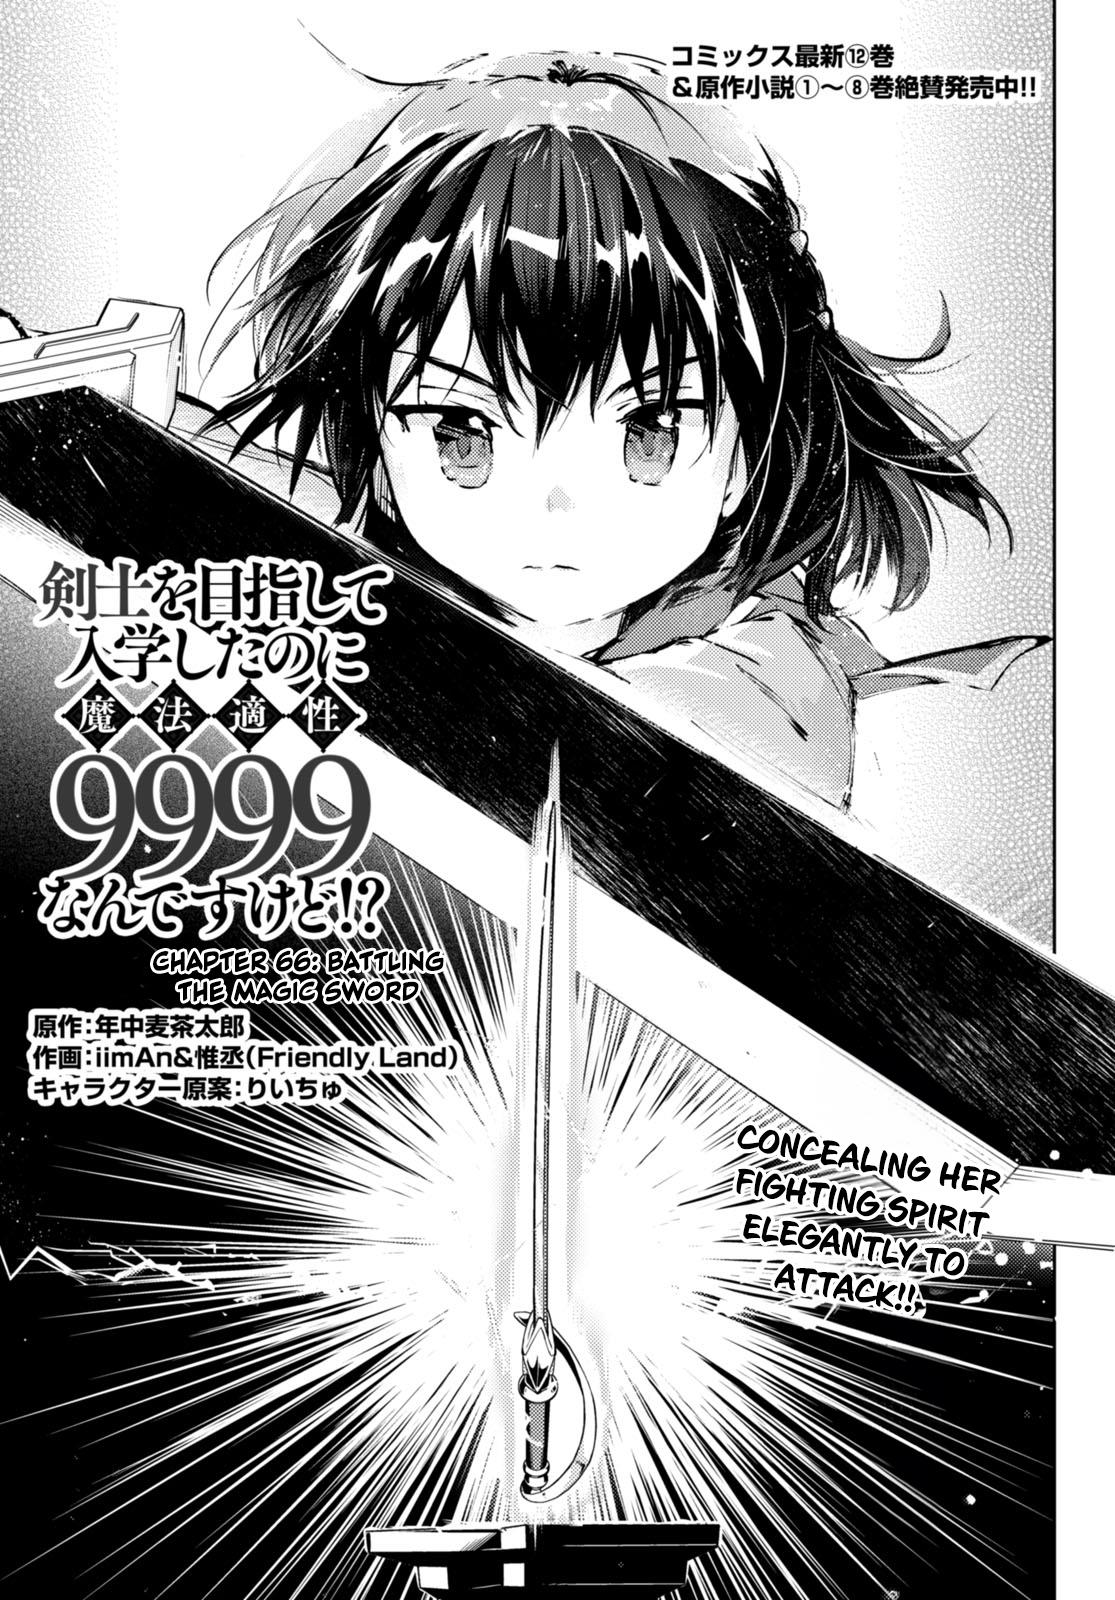 Kenshi O Mezashite Nyugaku Shitanoni Maho Tekisei 9999 Nandesukedo!? Chapter 66: Battling The Magic Sword! - Picture 1